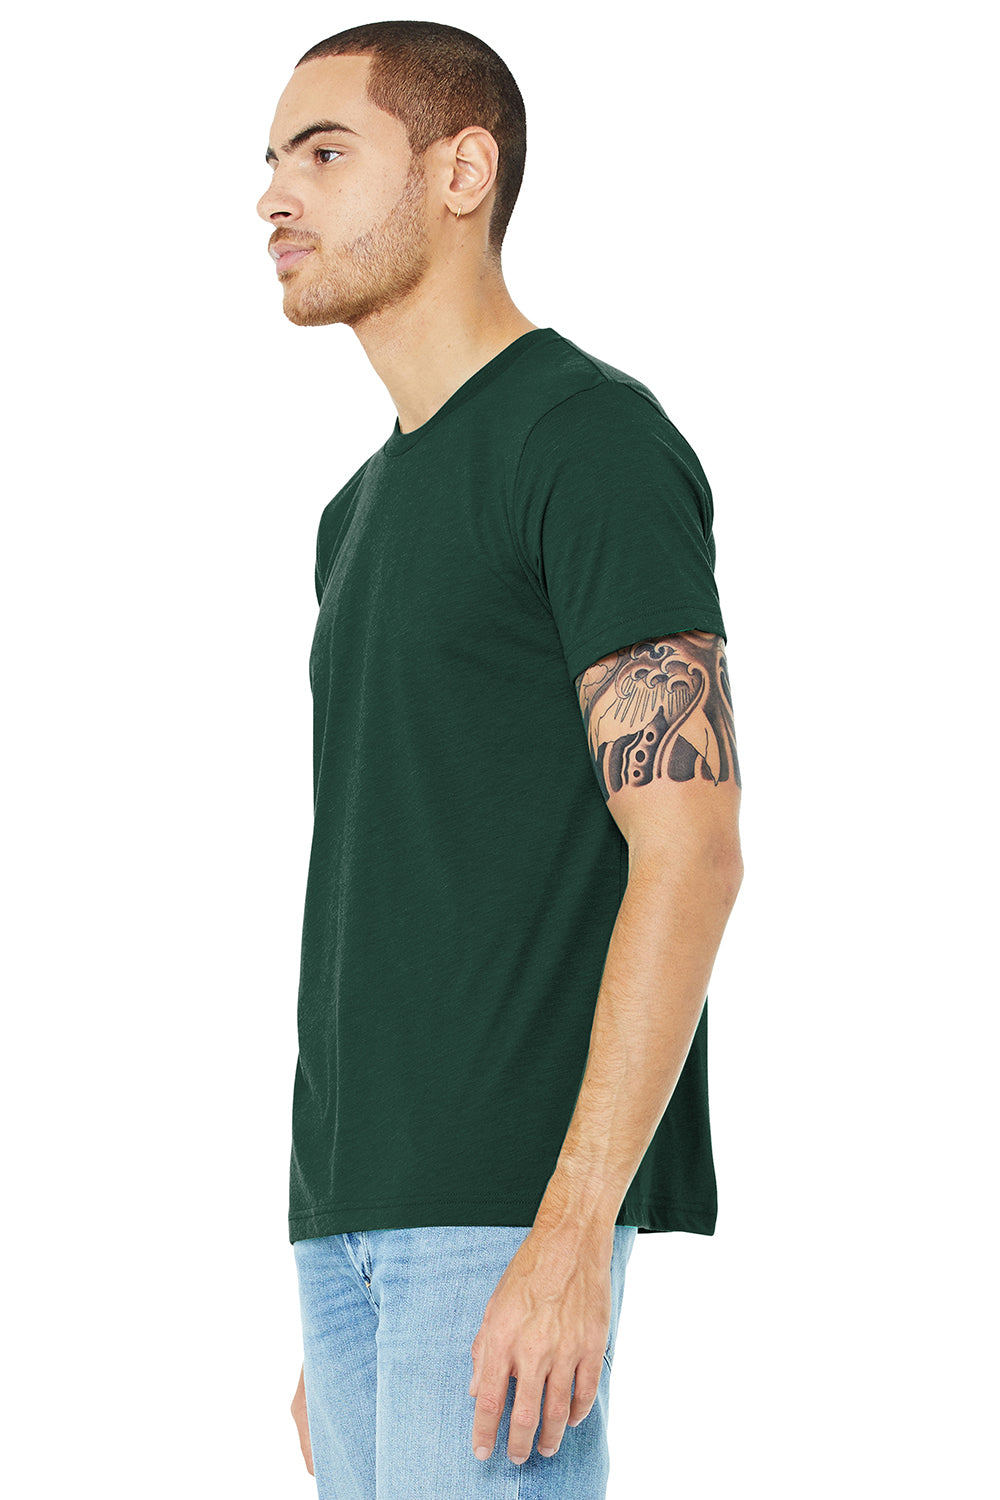 Bella + Canvas BC3413/3413C/3413 Mens Short Sleeve Crewneck T-Shirt Solid Forest Green Model 3Q